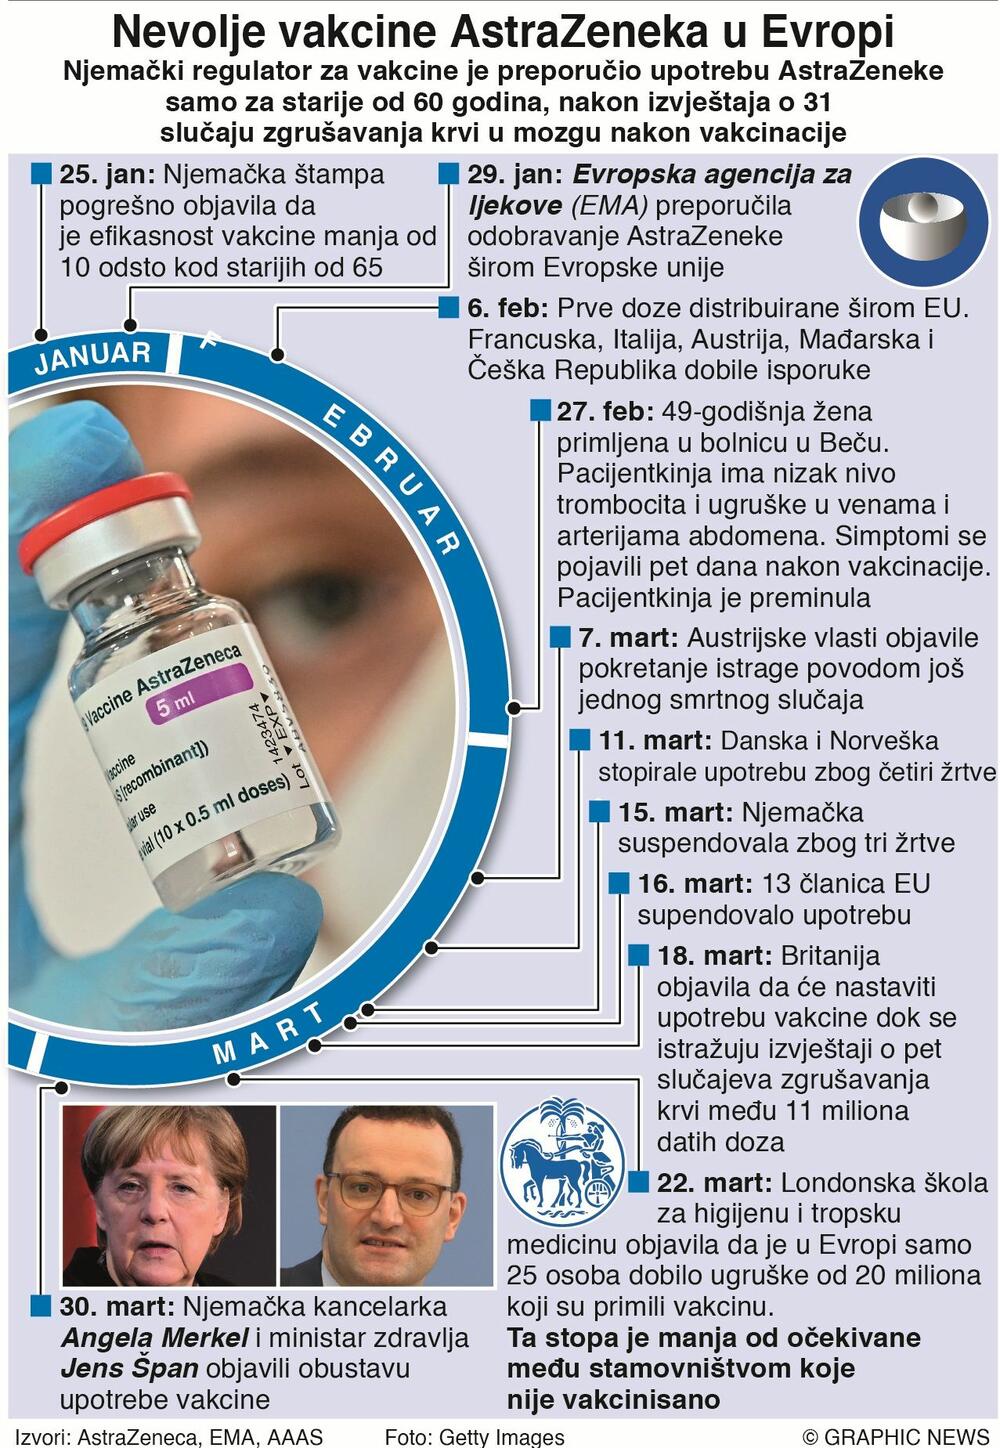 Nevolje vakcine Astrazeneka 